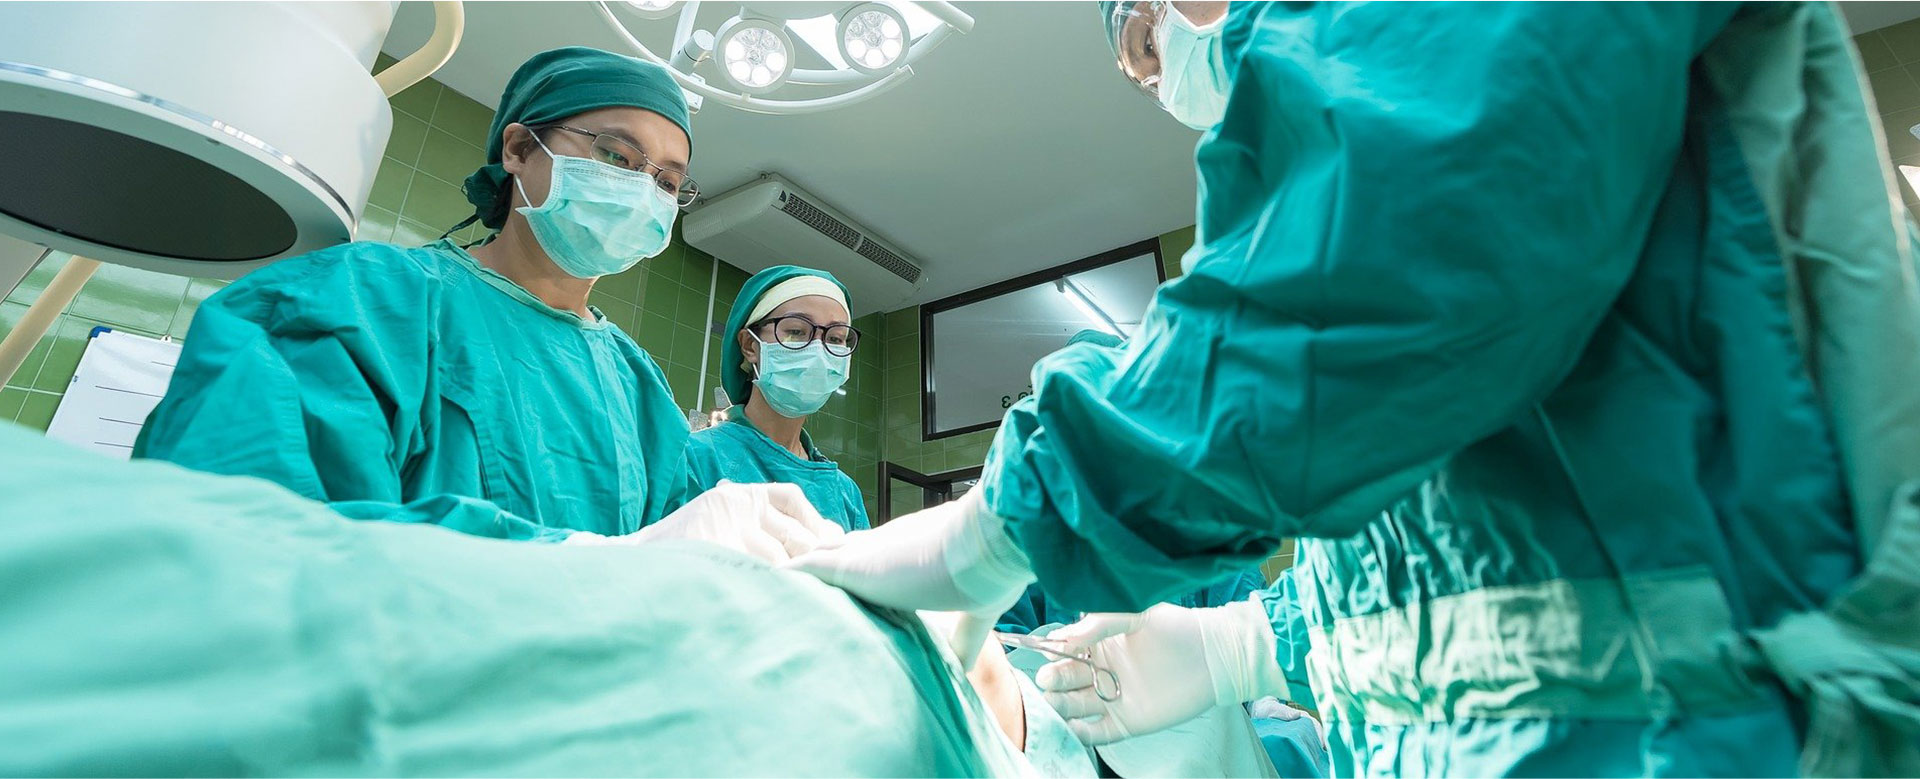 Procédure médicale en cours sur une table d'opération